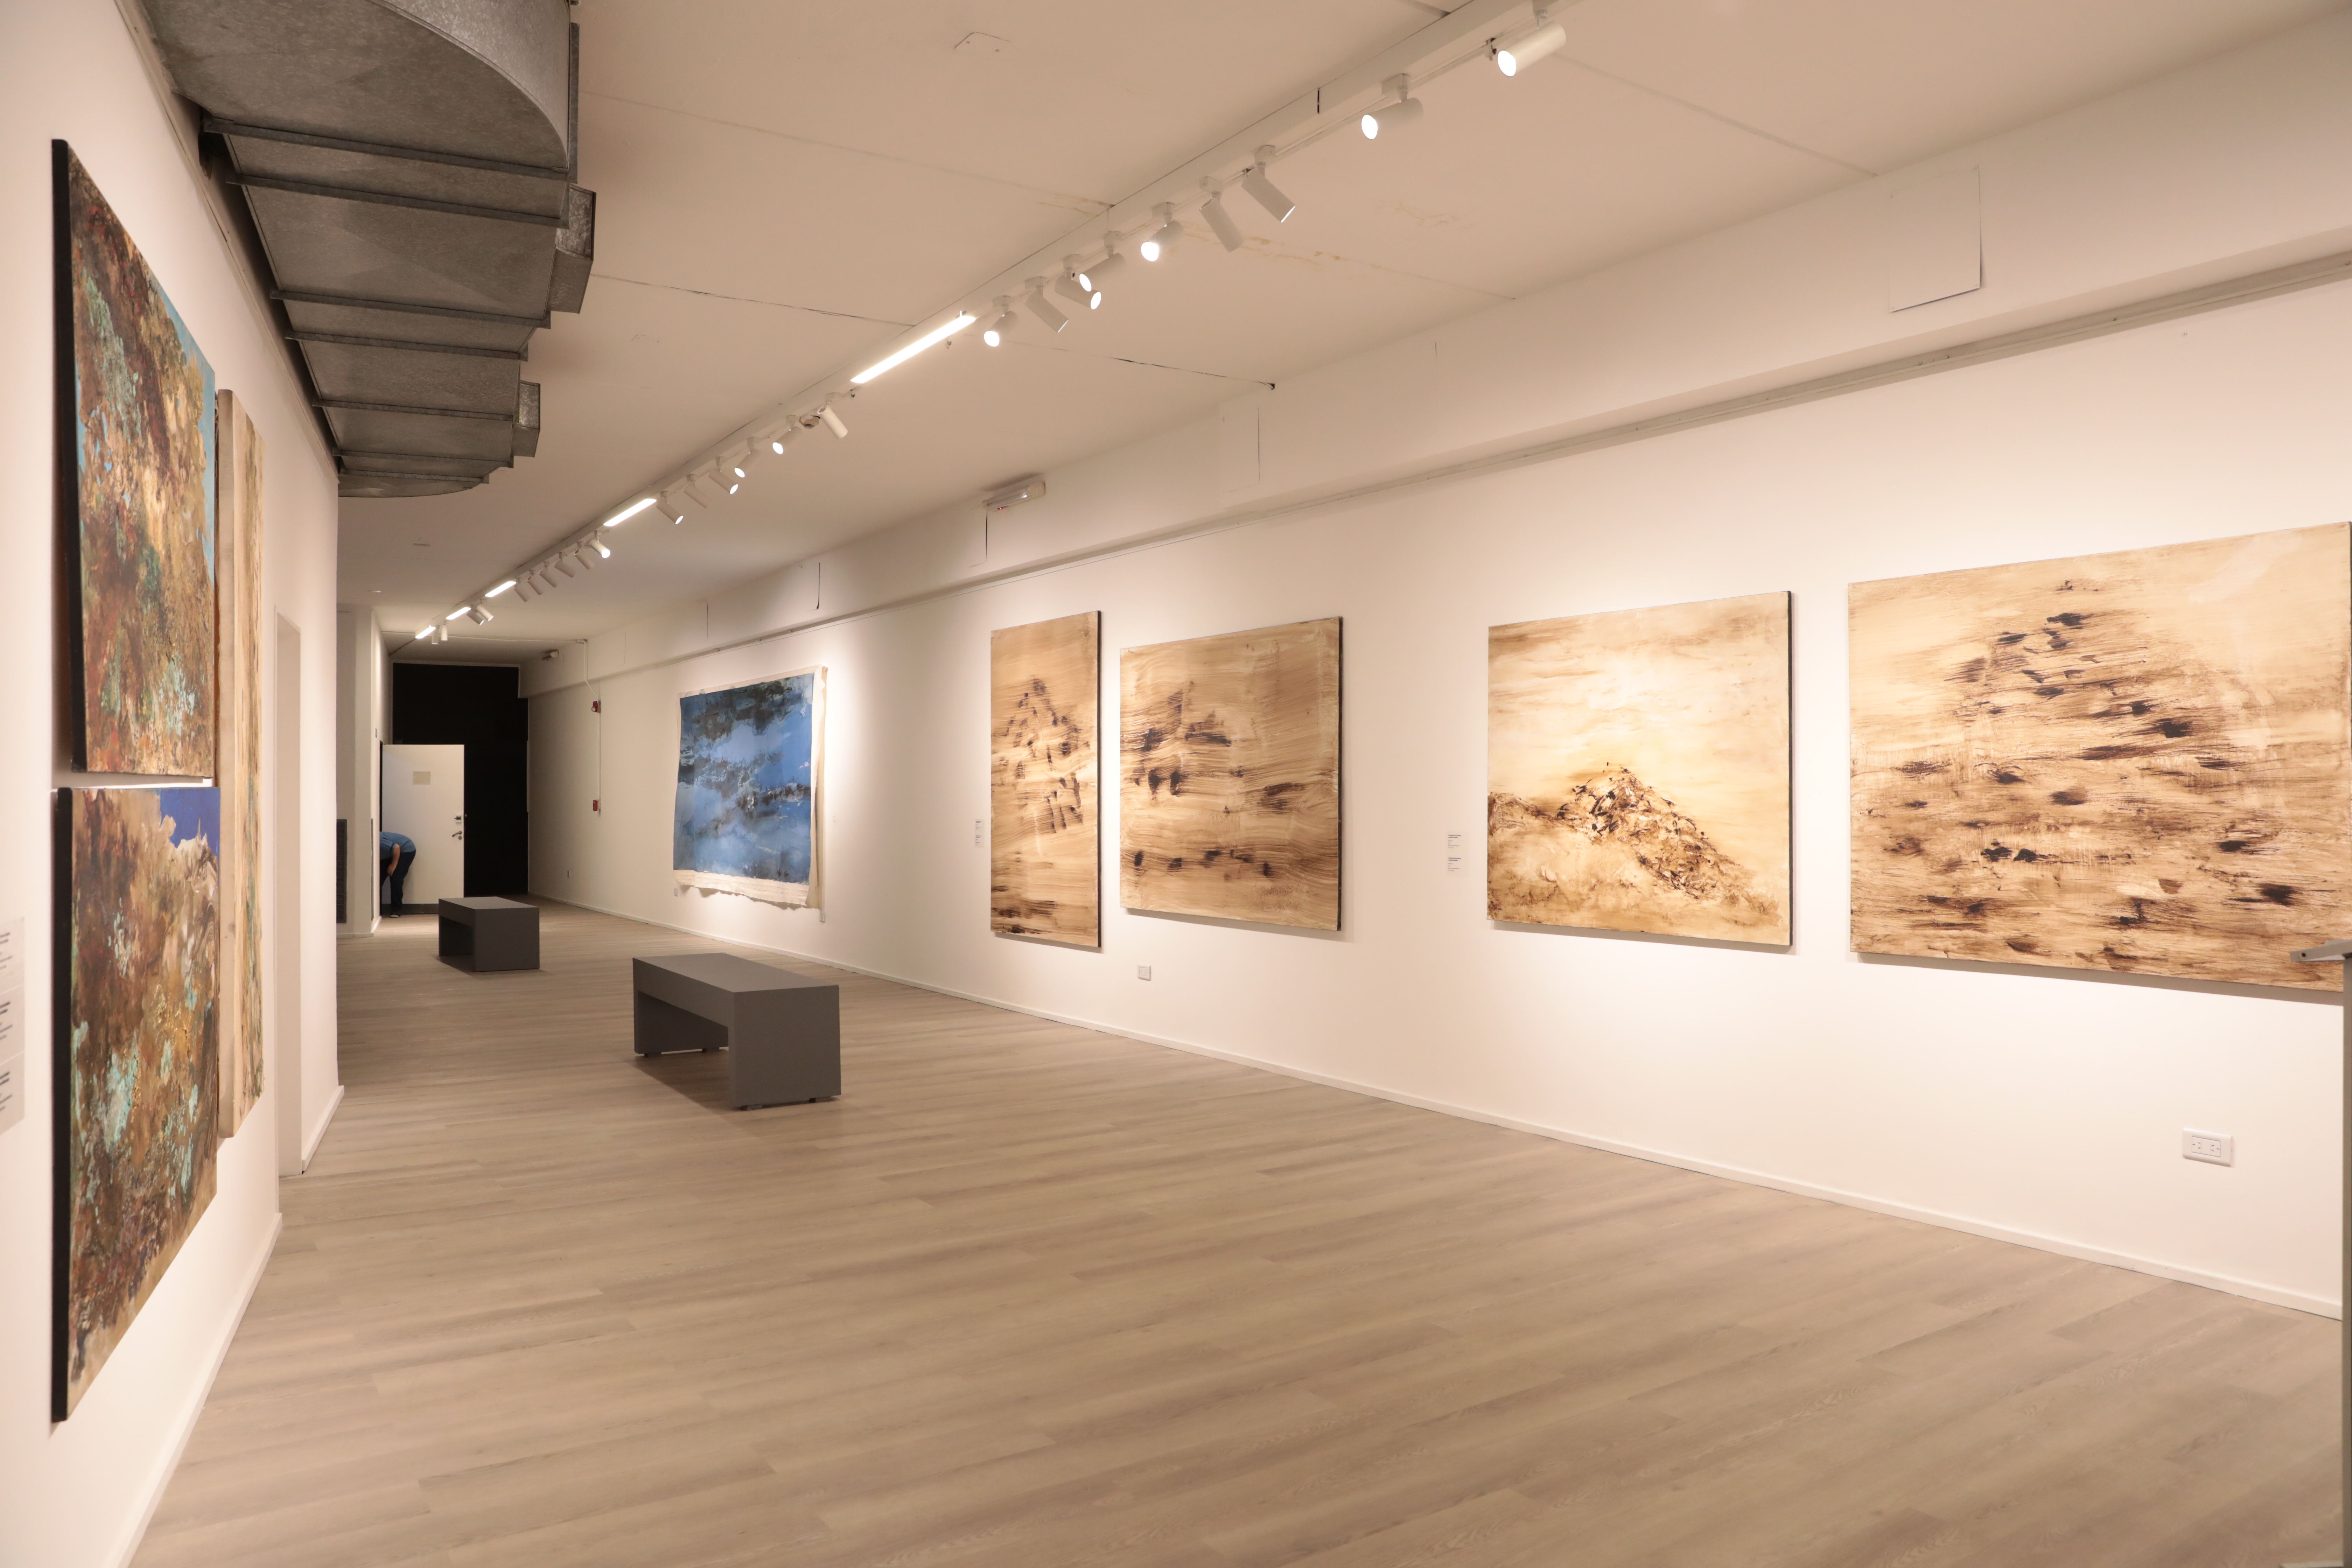 La galería del Rojas luce renovada con una muestra del artista sanjuanino Carlos Gómez Centurión